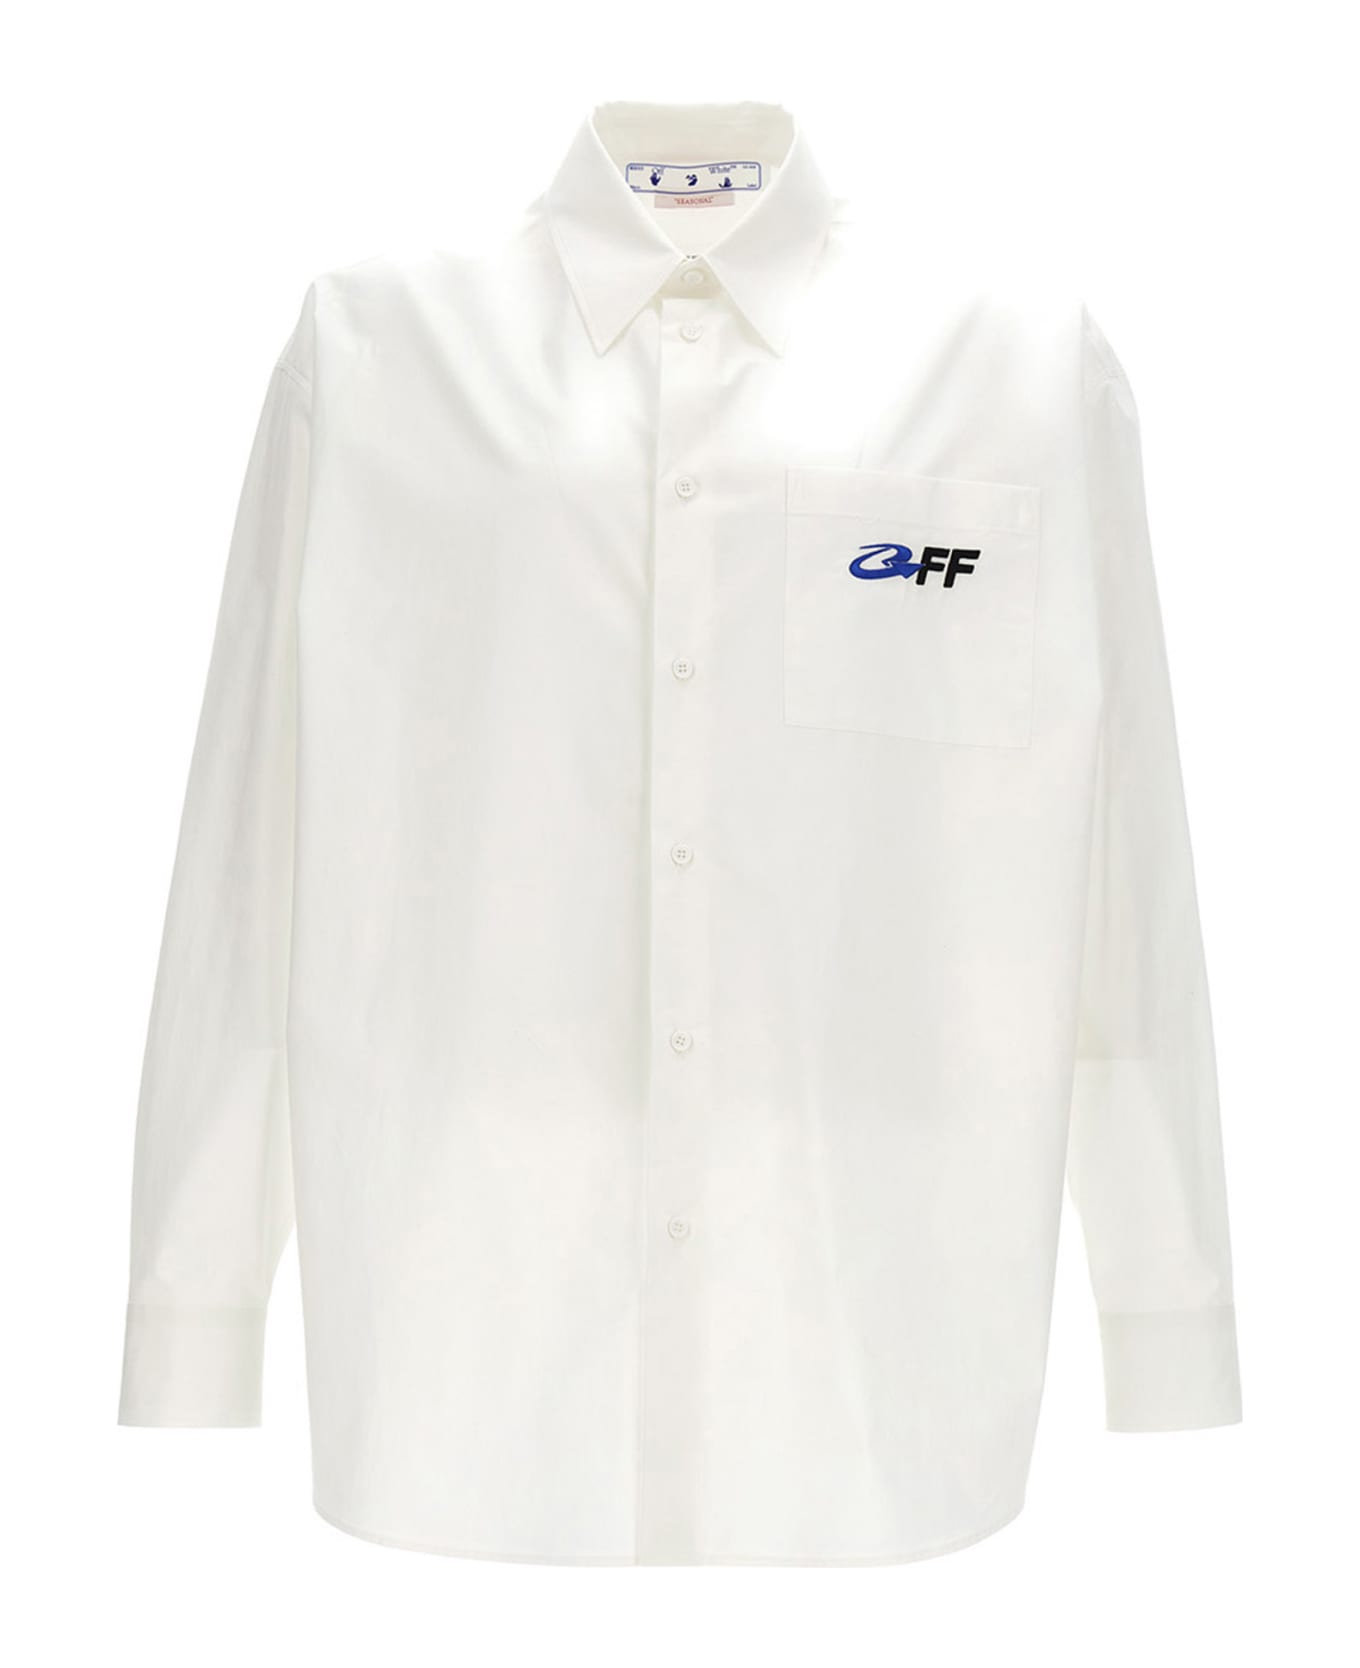 Off-White Overshirt 'exact Opposite' - White シャツ